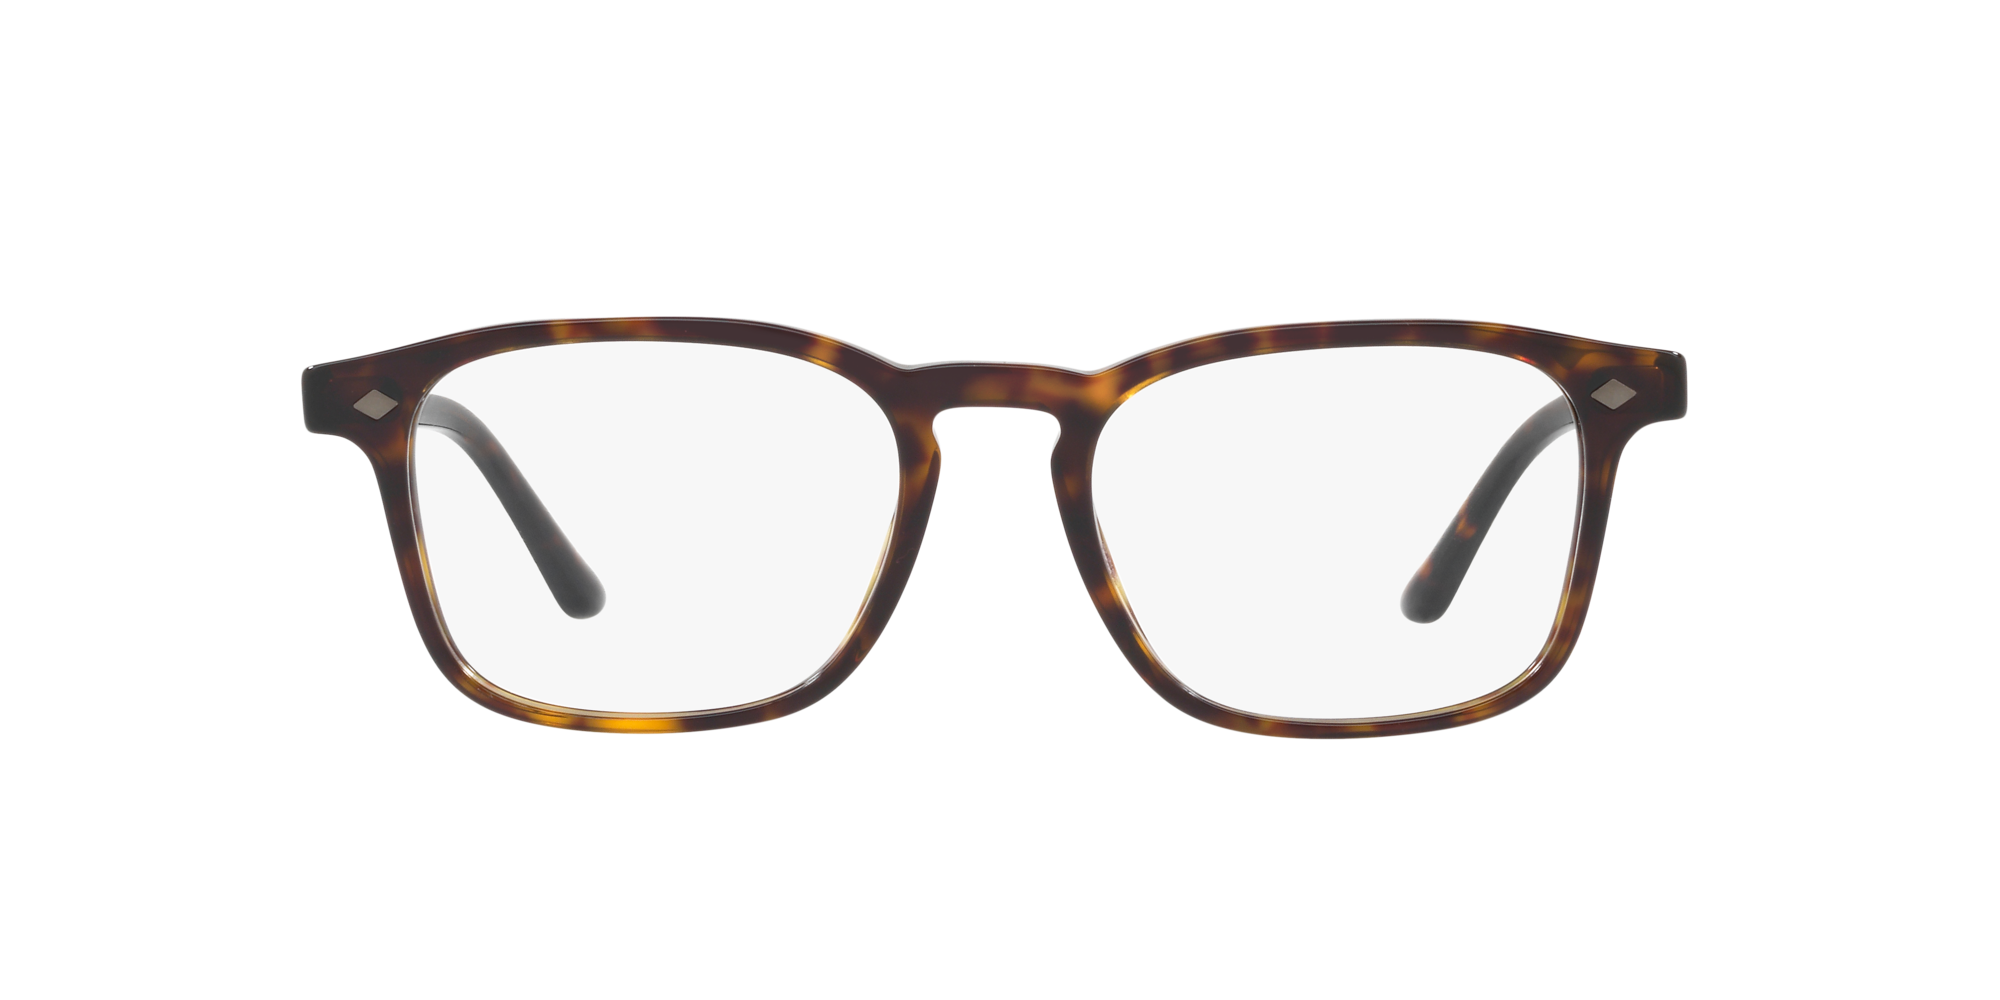 giorgio armani glasses lenscrafters